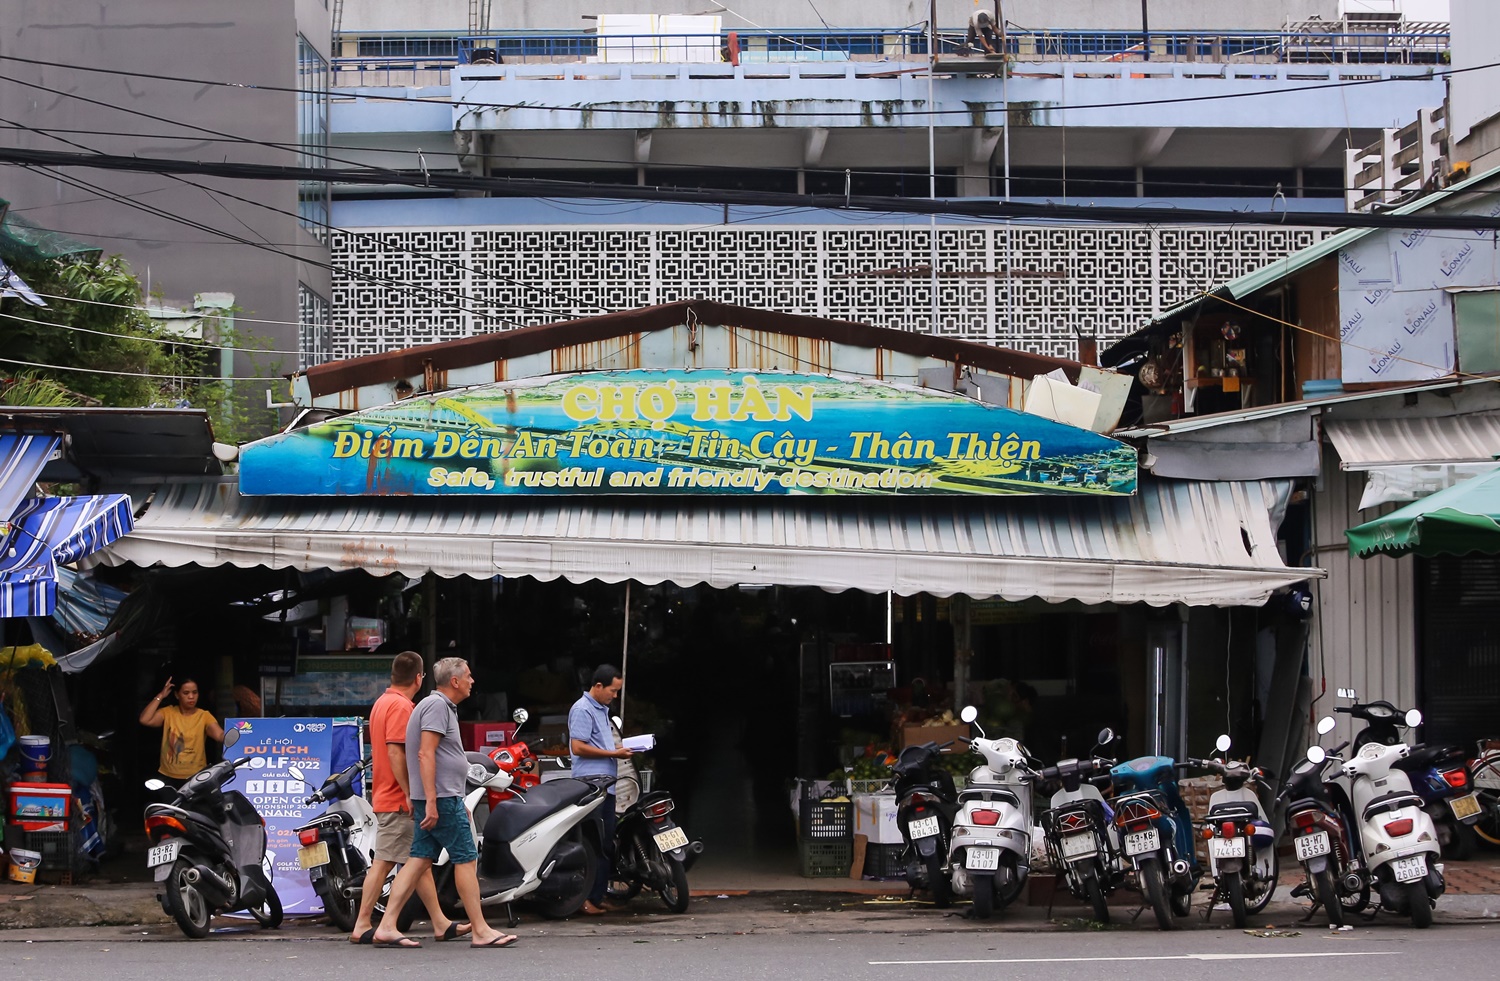 &quot;Chợ nhà giàu&quot; ở Đà Nẵng trước giờ thay áo mới để phục vụ du lịch - Ảnh 3.